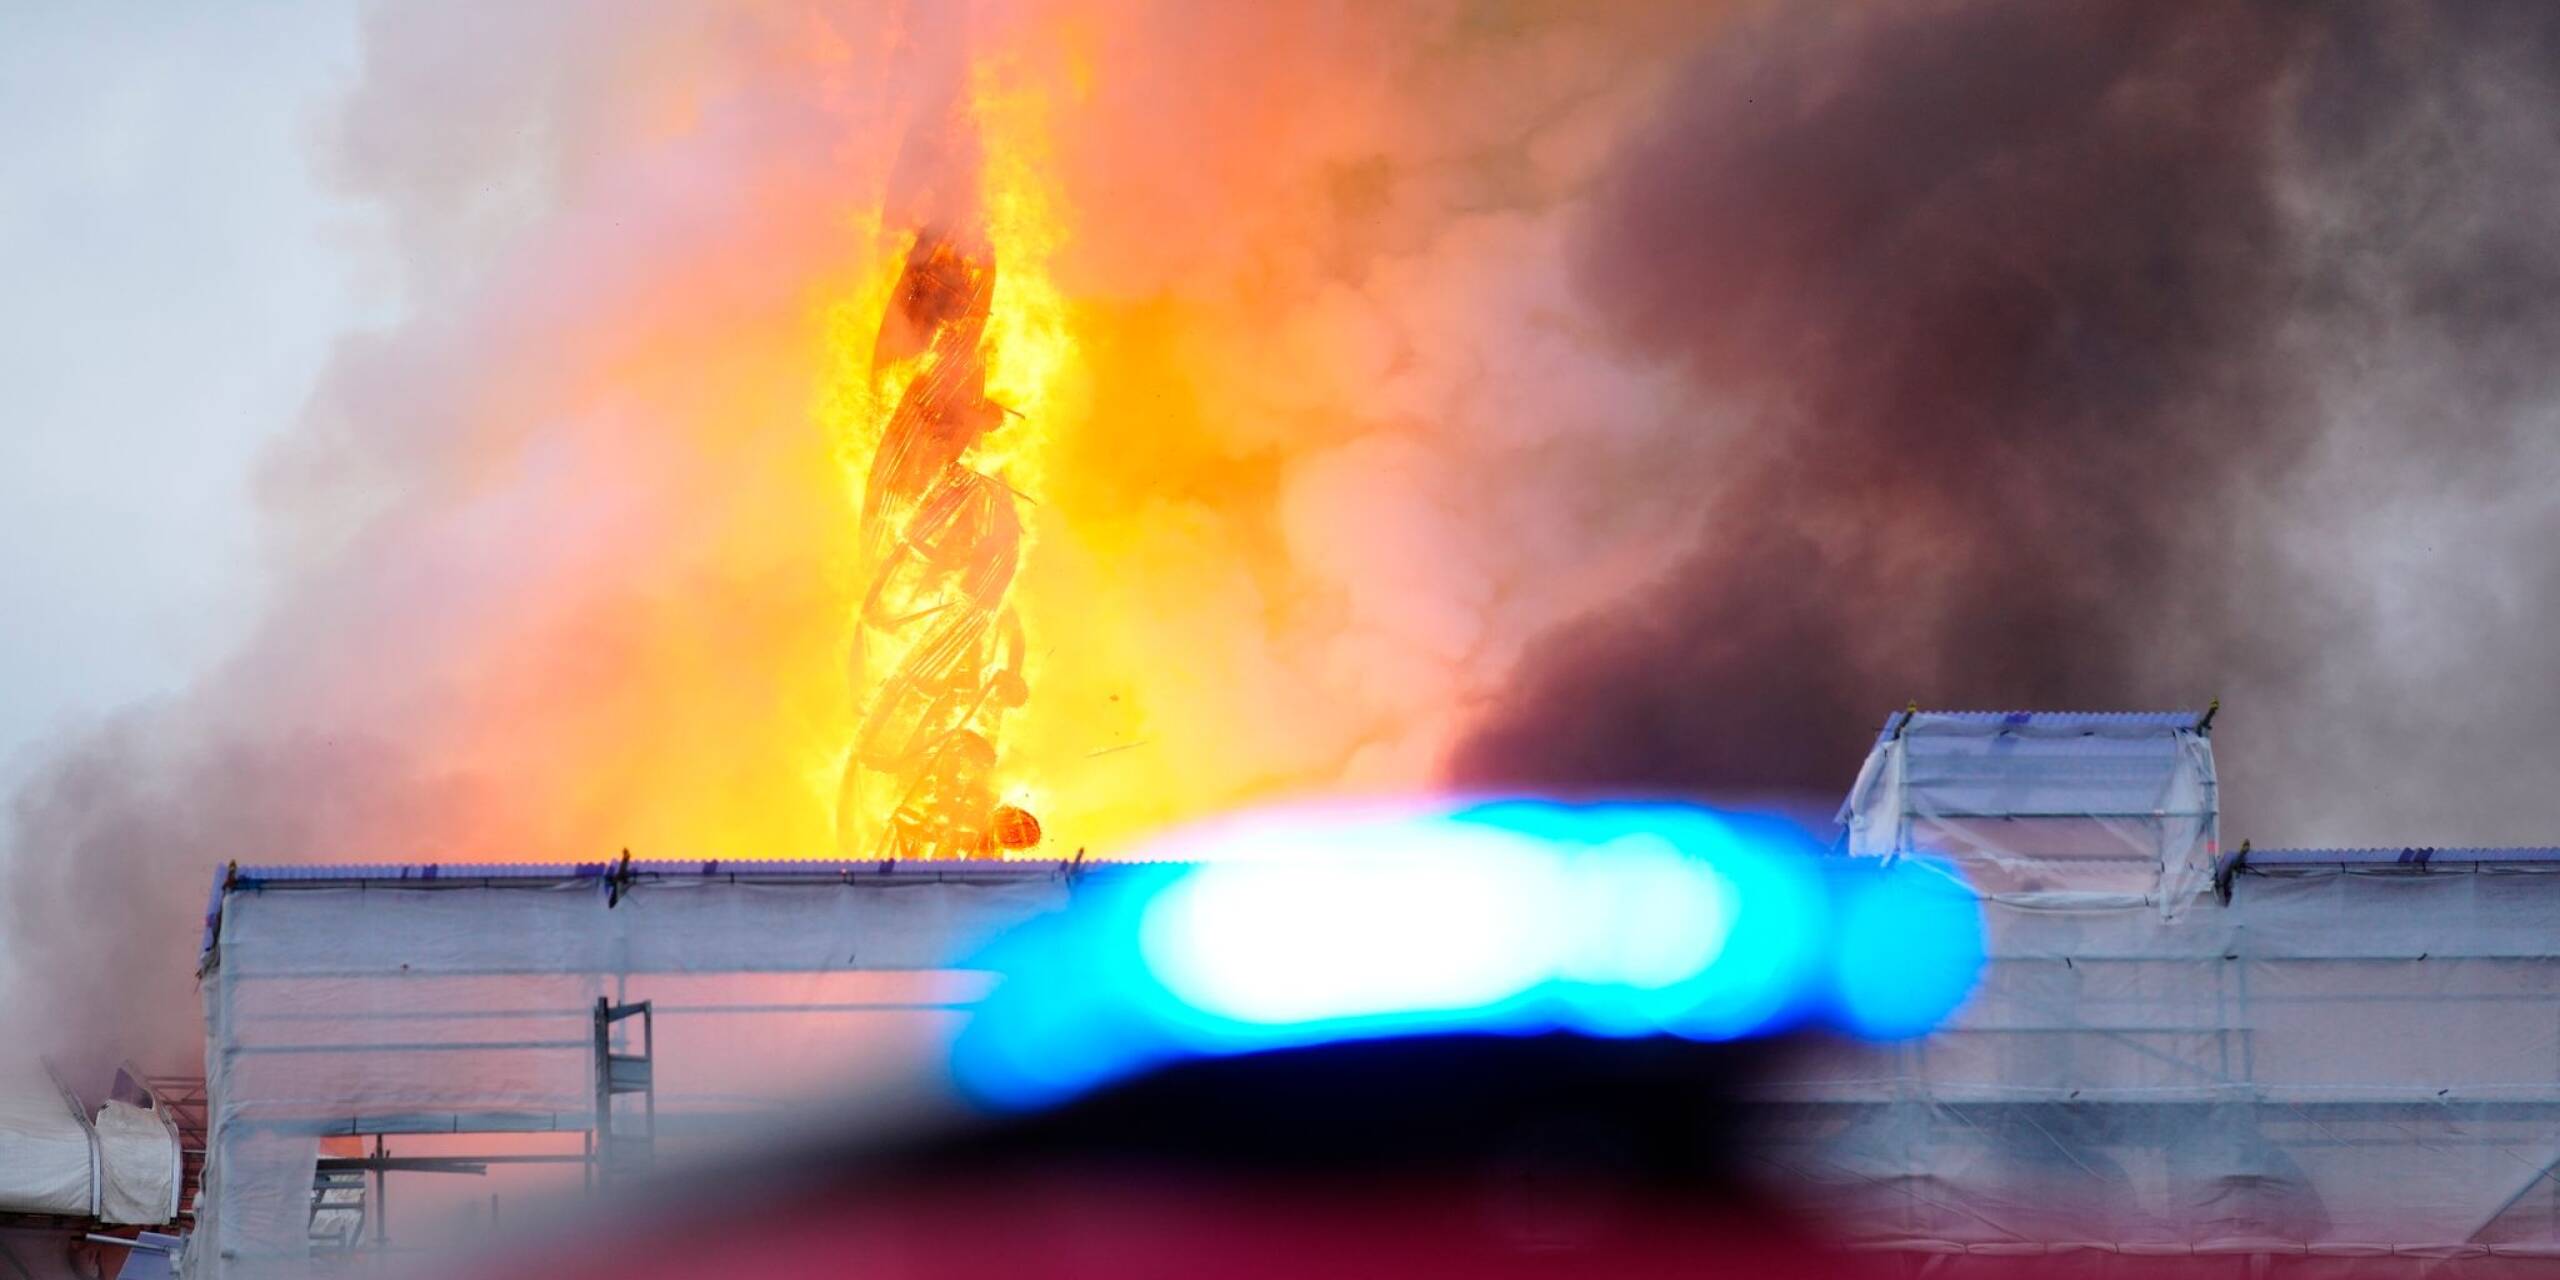 Die historische Börse in Kopenhagen steht in Flammen. Die Turmspitze des Gebäudes ist aufgrund des Brandes eingestürzt.